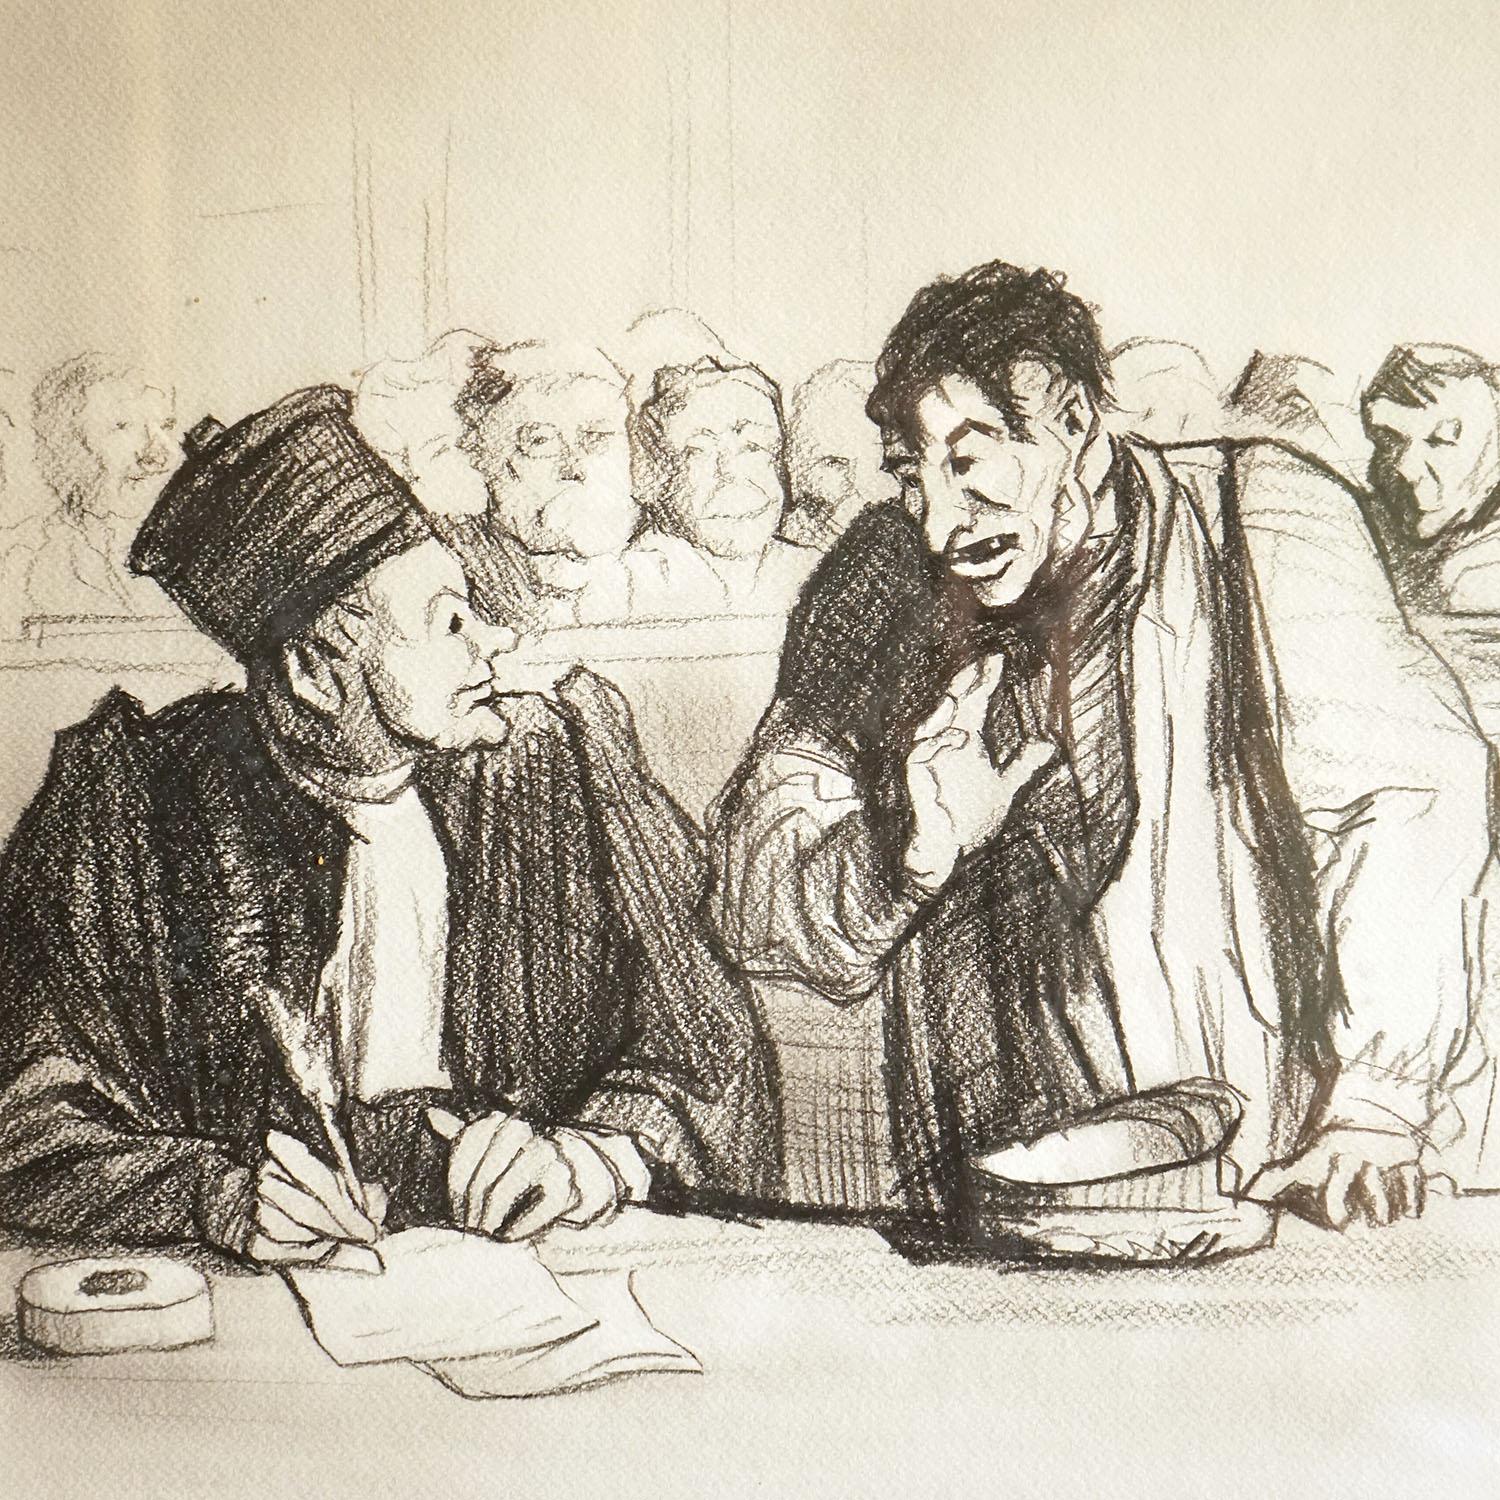 Étude originale vintage au crayon et au fusain

Dessin d'après l'œuvre originale d'Honoré Daumier, français (1808-1879).  

L'original, qui constitue le n° 3 de la série 